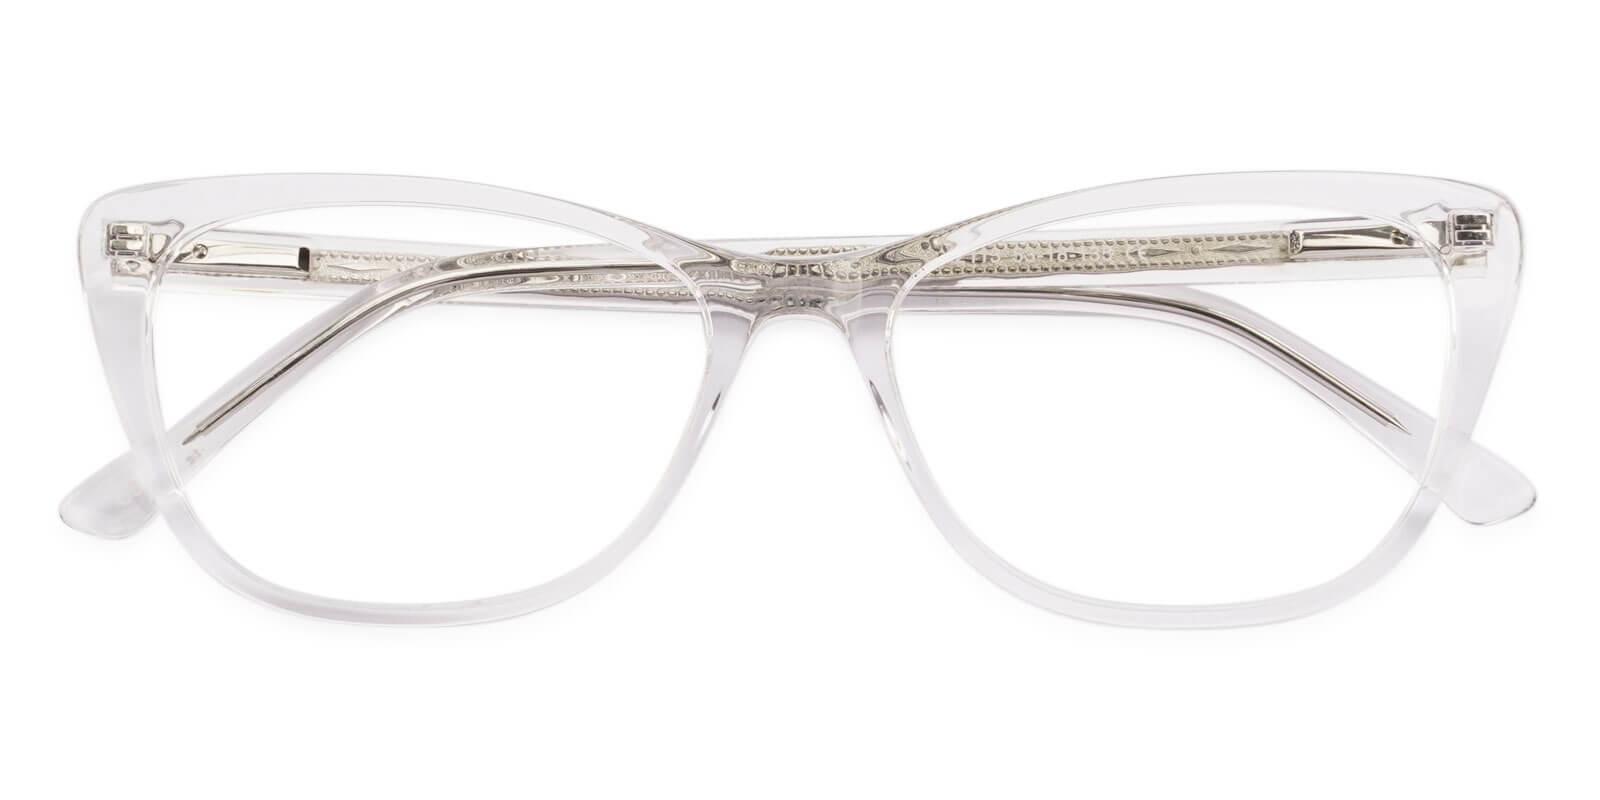 Yuke Translucent Acetate UniversalBridgeFit , SpringHinges , Eyeglasses Frames from ABBE Glasses